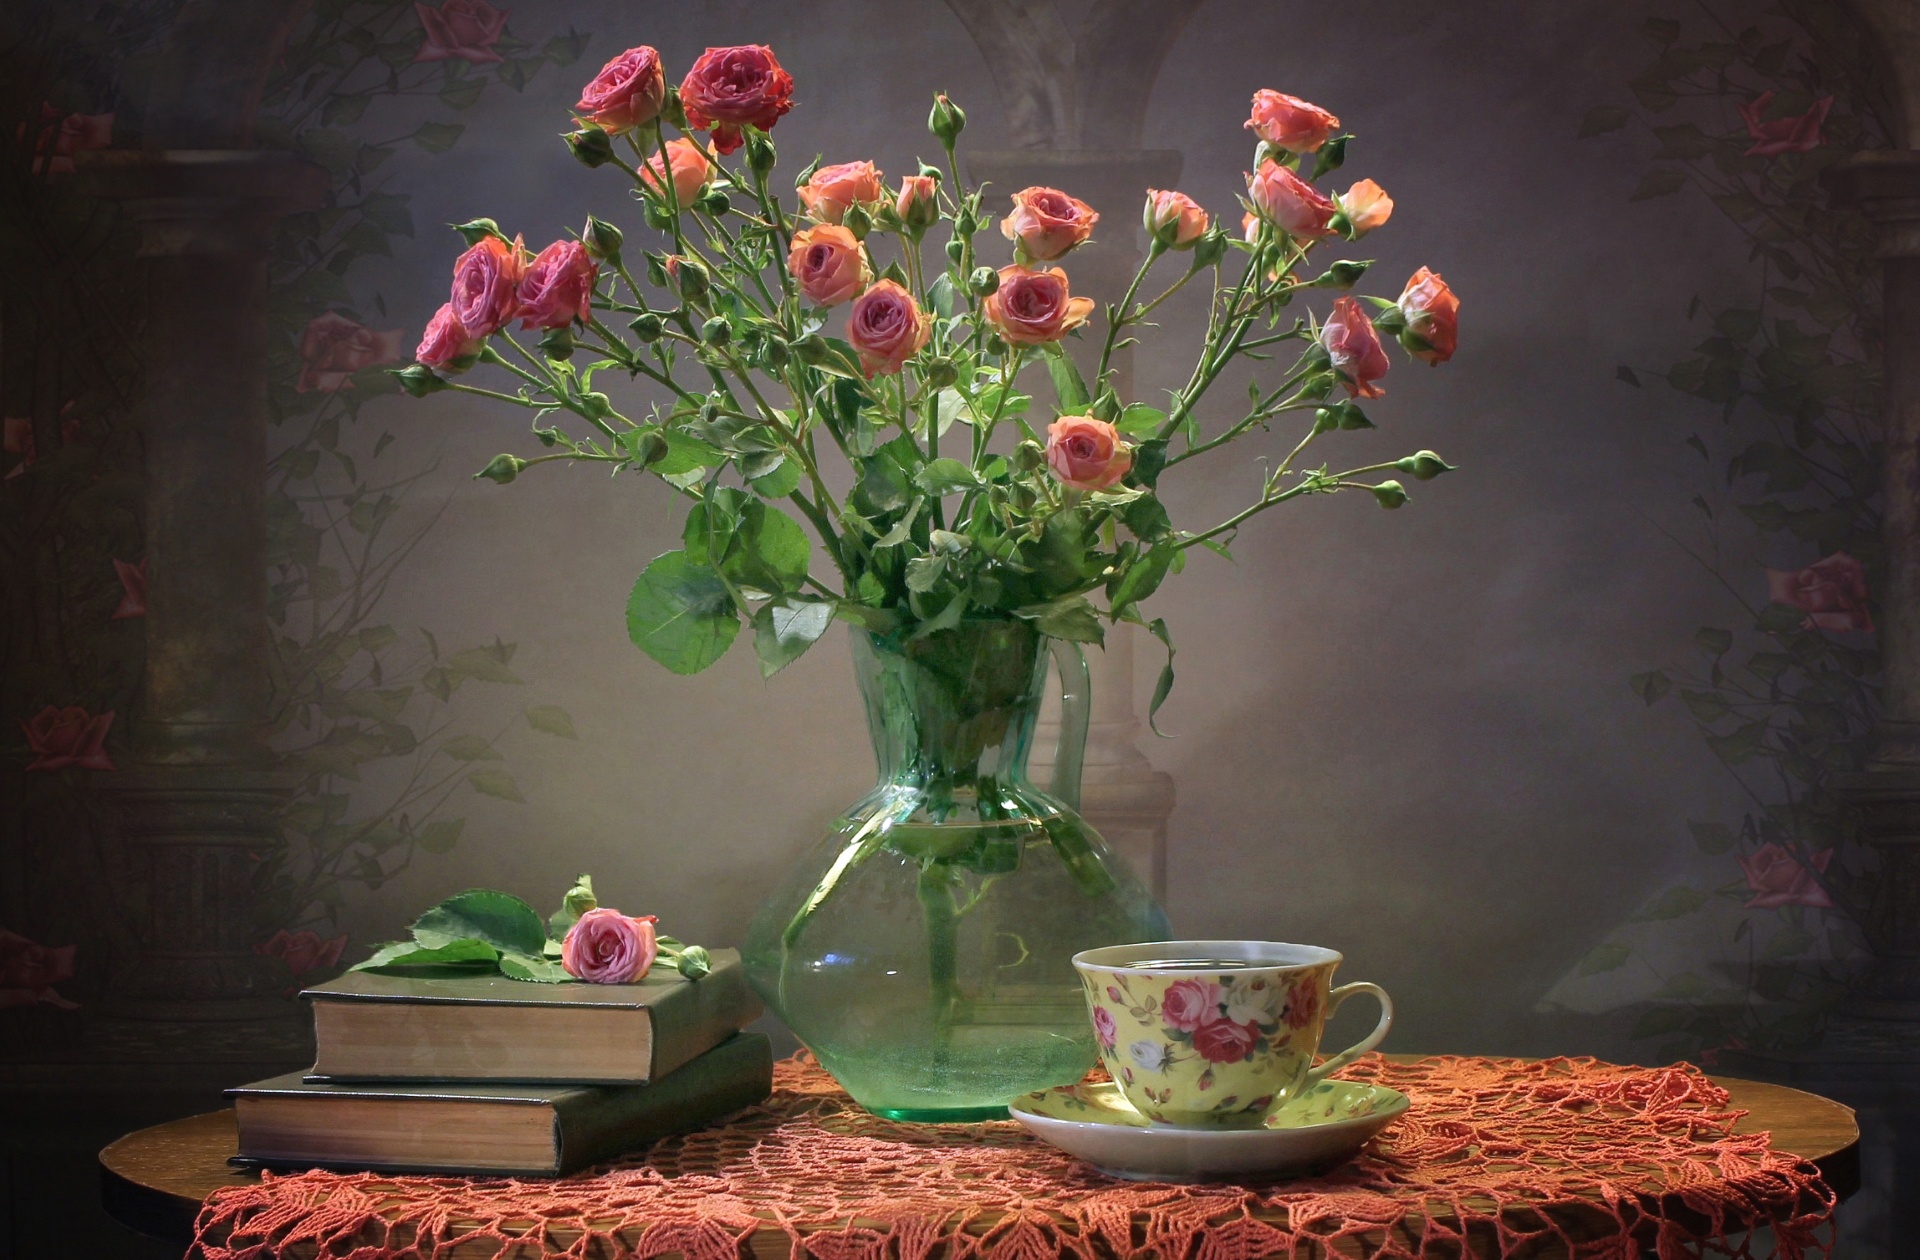 photography, still life, flower, pink rose, rose, saucer, teacup, vase